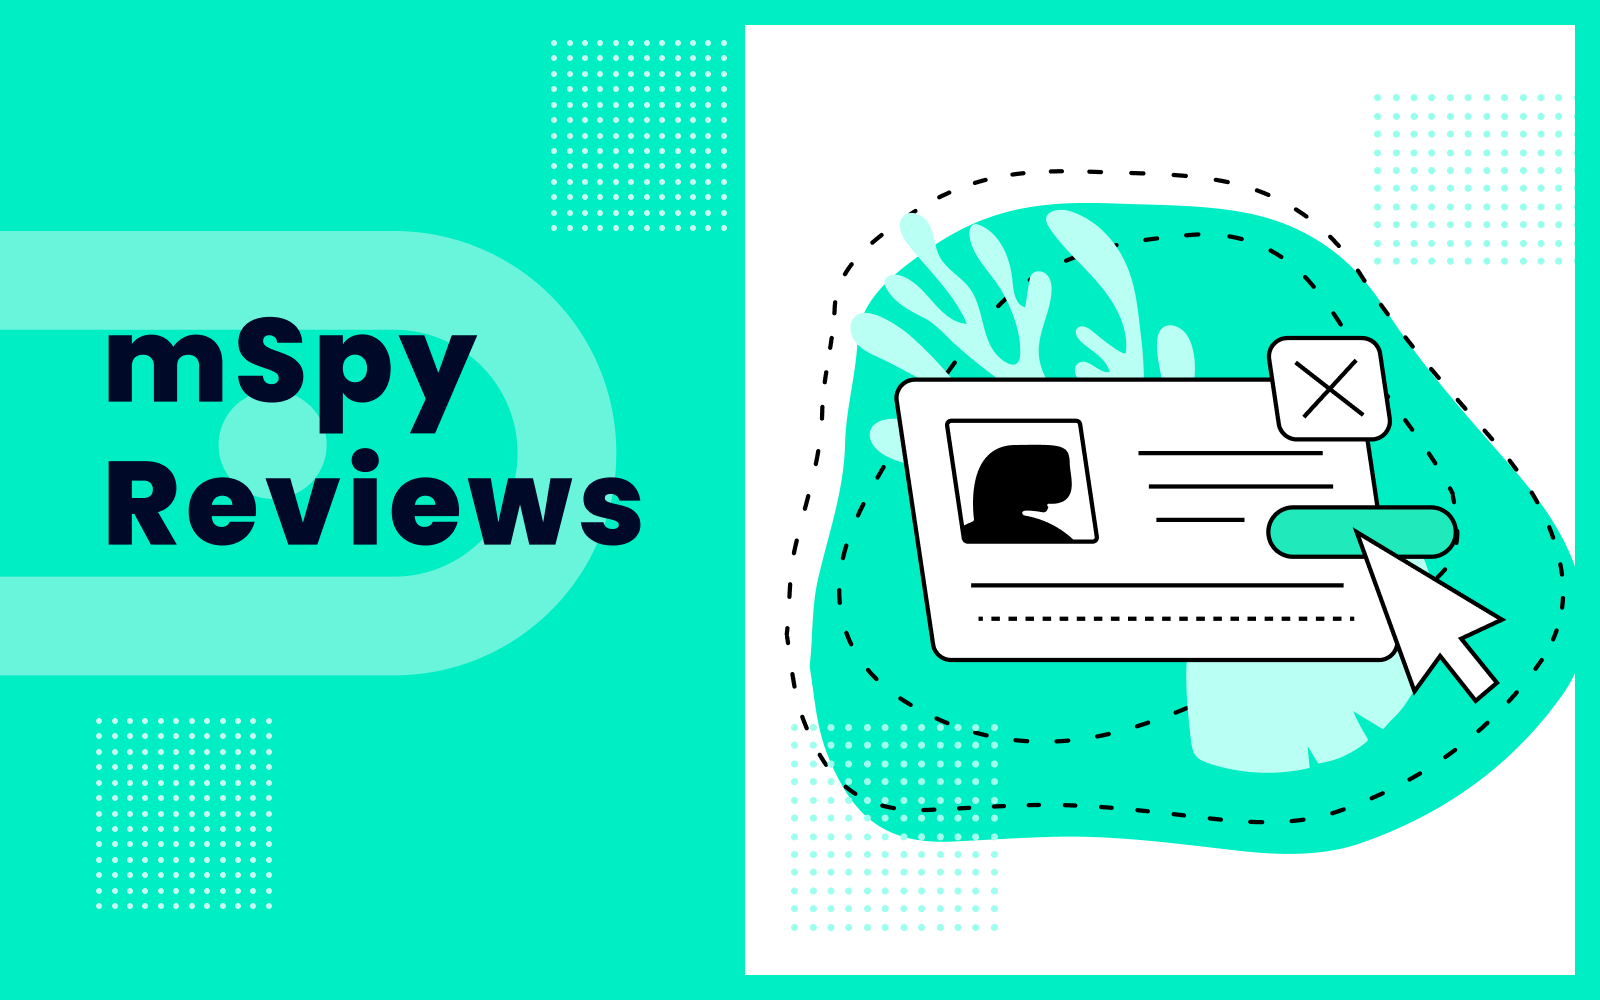 mSpy Reviews